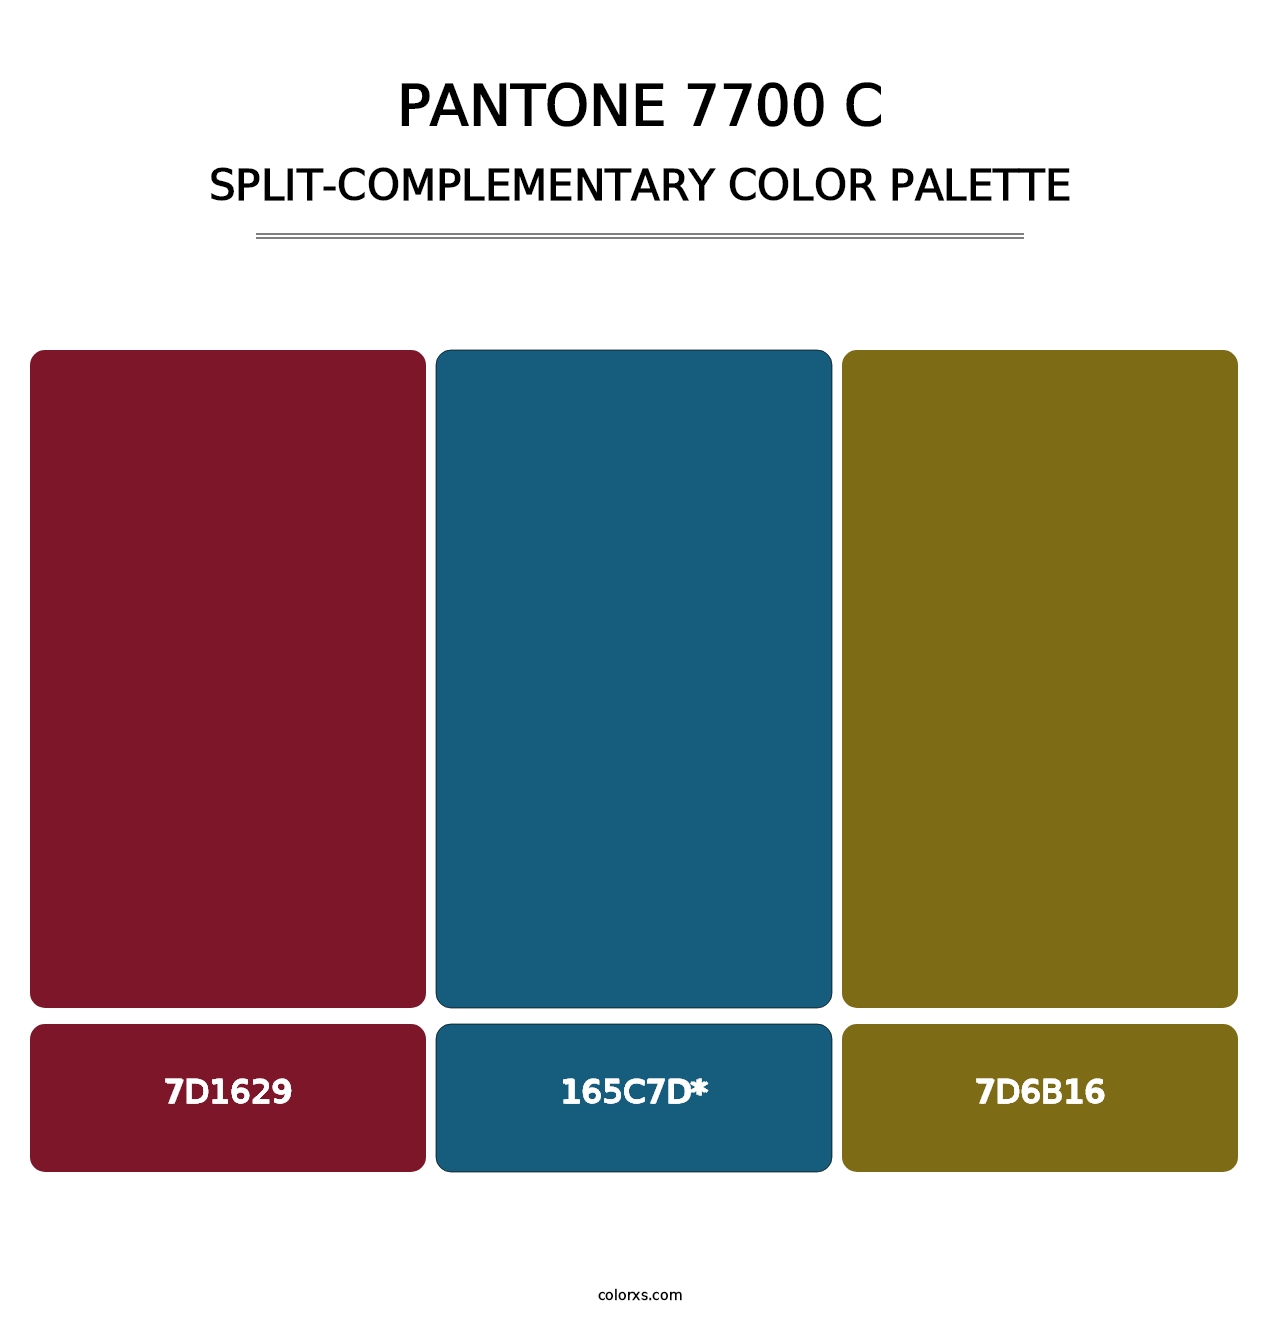 PANTONE 7700 C - Split-Complementary Color Palette